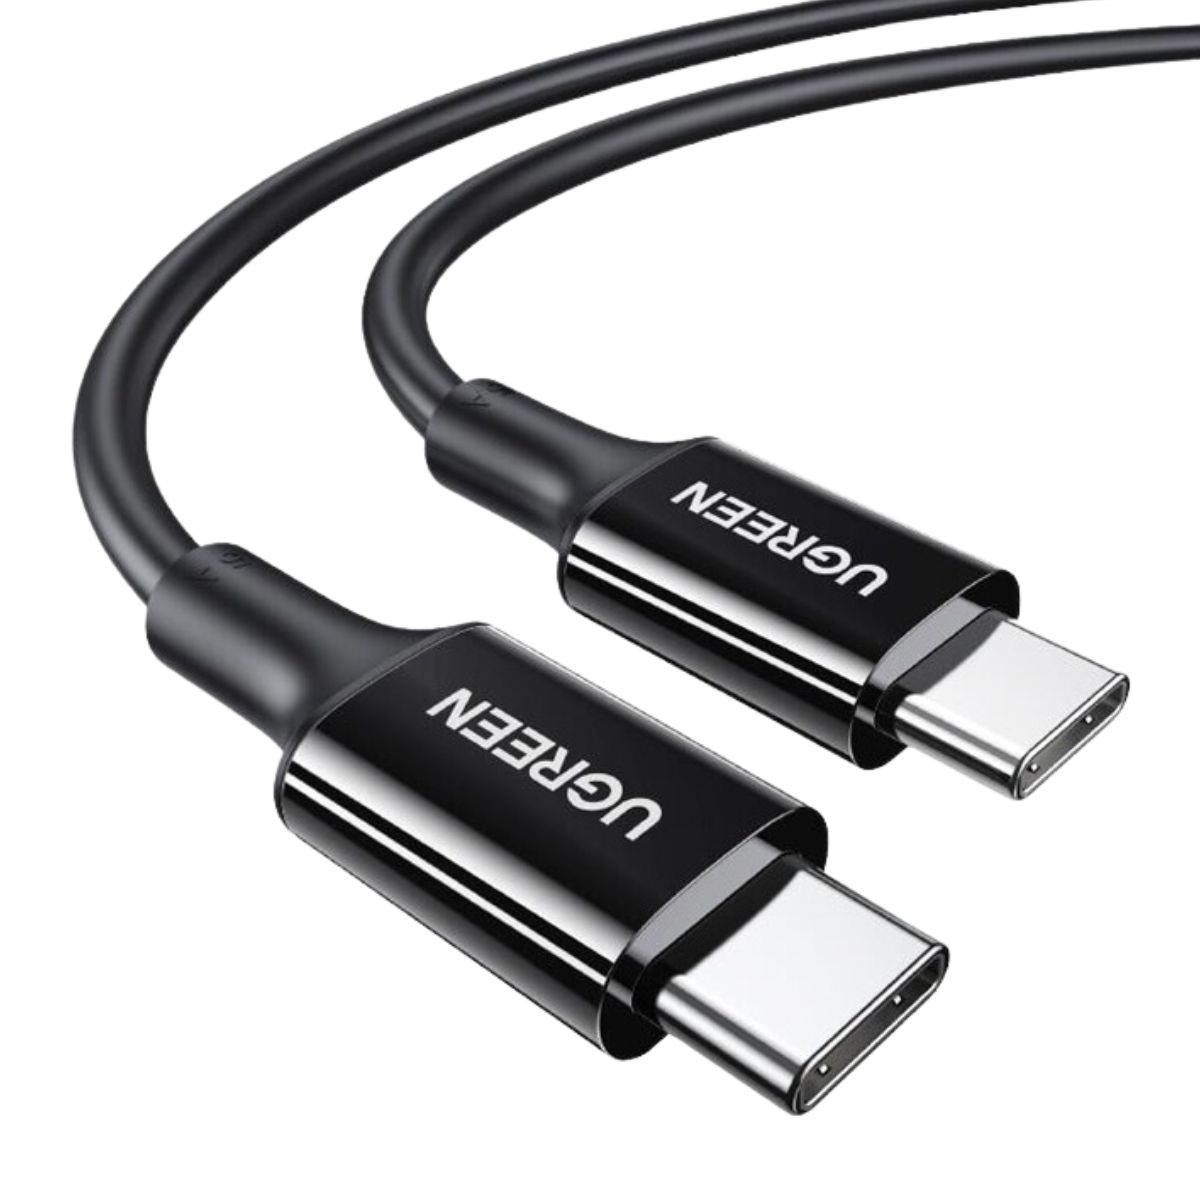 Cáp sạc 1m USB-C đến USB-C Ugreen 80371 US300 màu đen, tốc độ truyền dữ liệu 480Mbps, sạc nhanh 5A